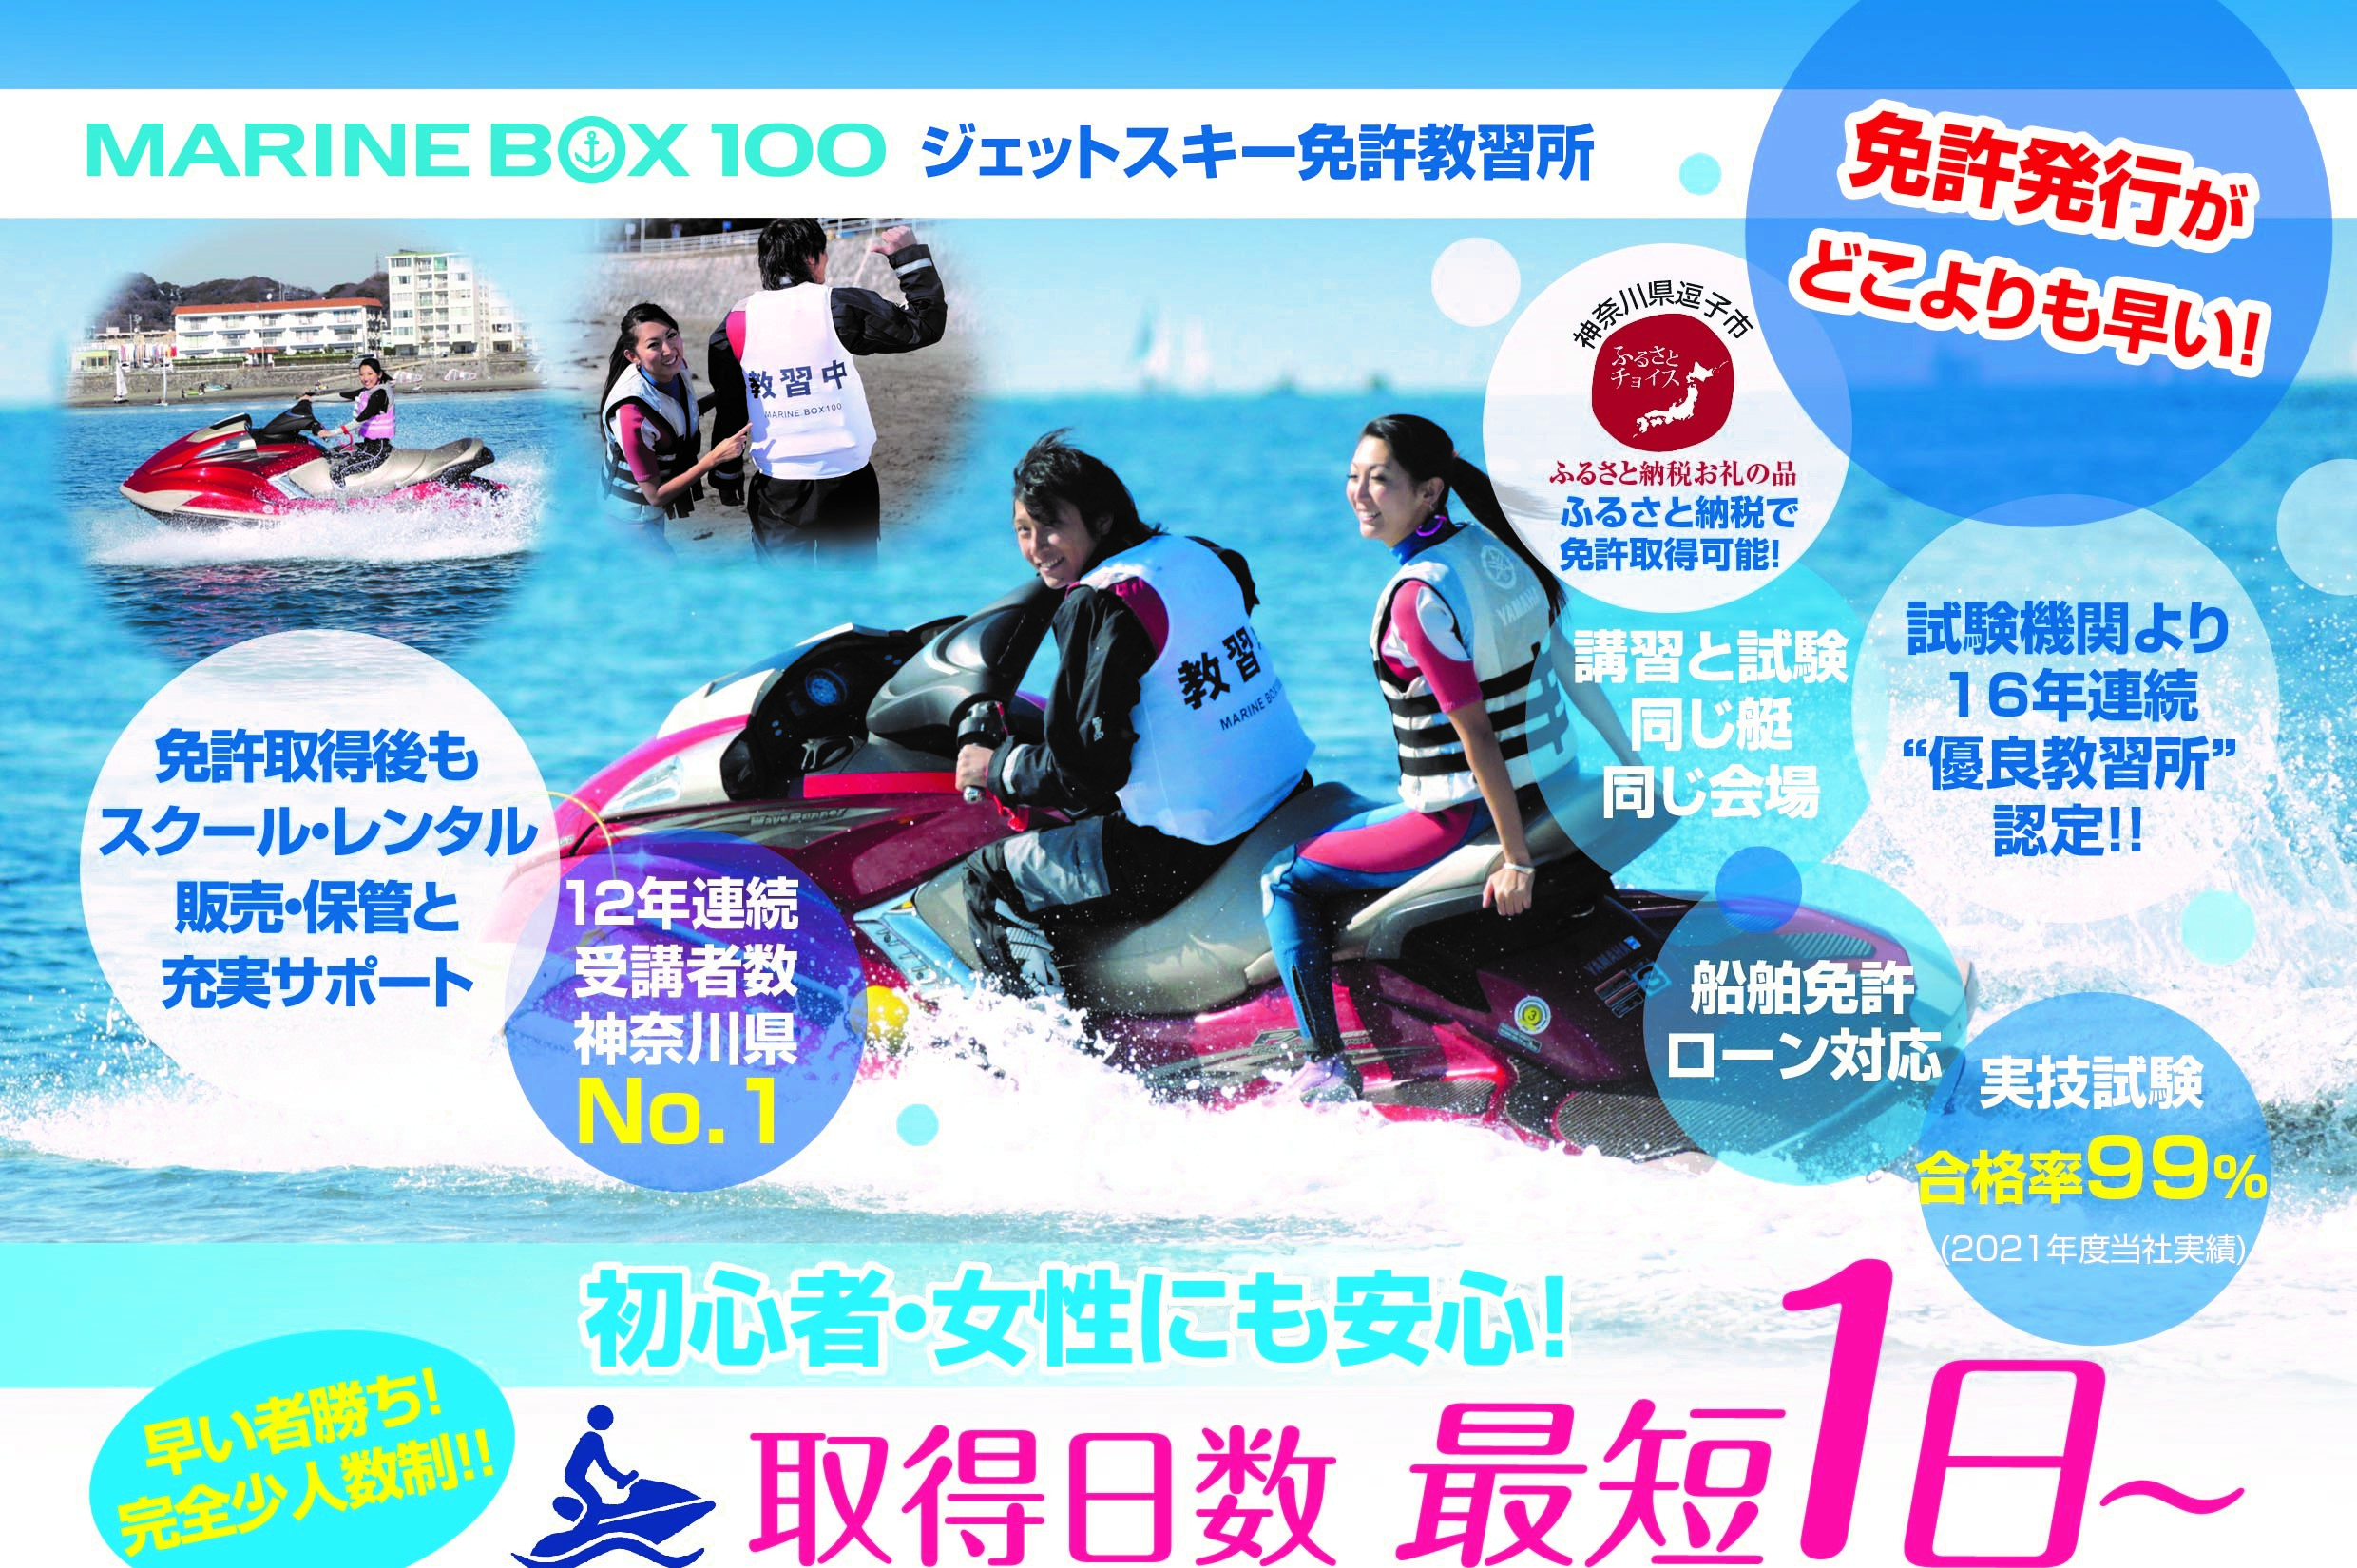 特殊小型船舶免許の取得は神奈川県逗子のマリンボックス100！優良 